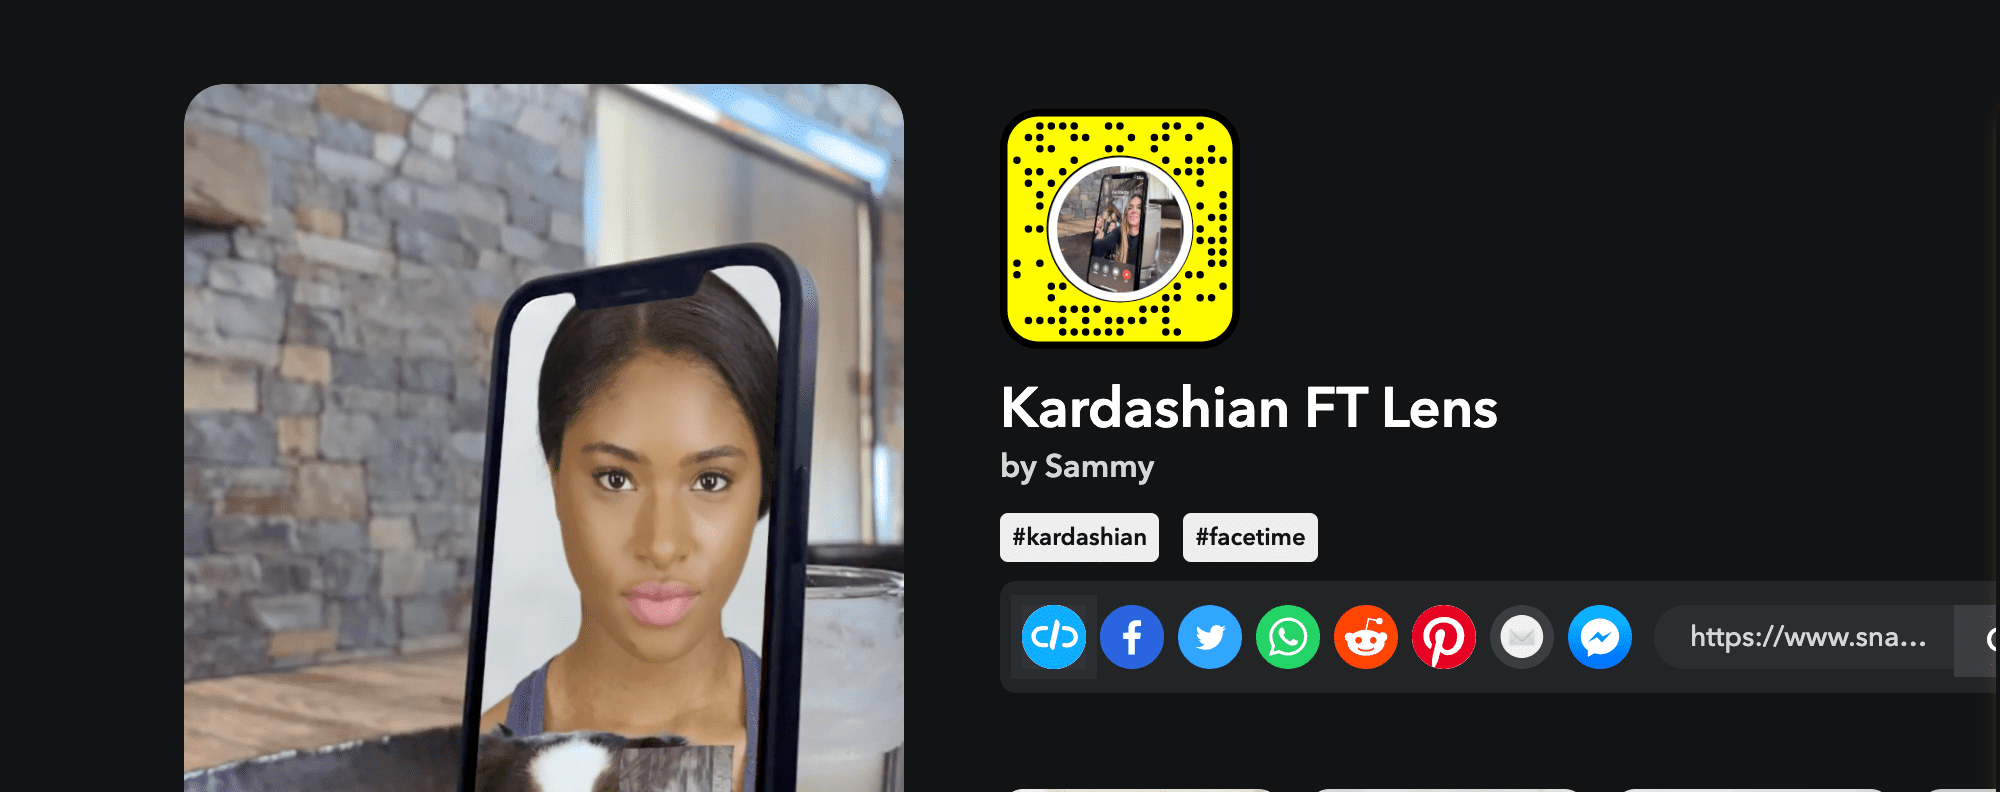 Kardashian FT lens by sammy